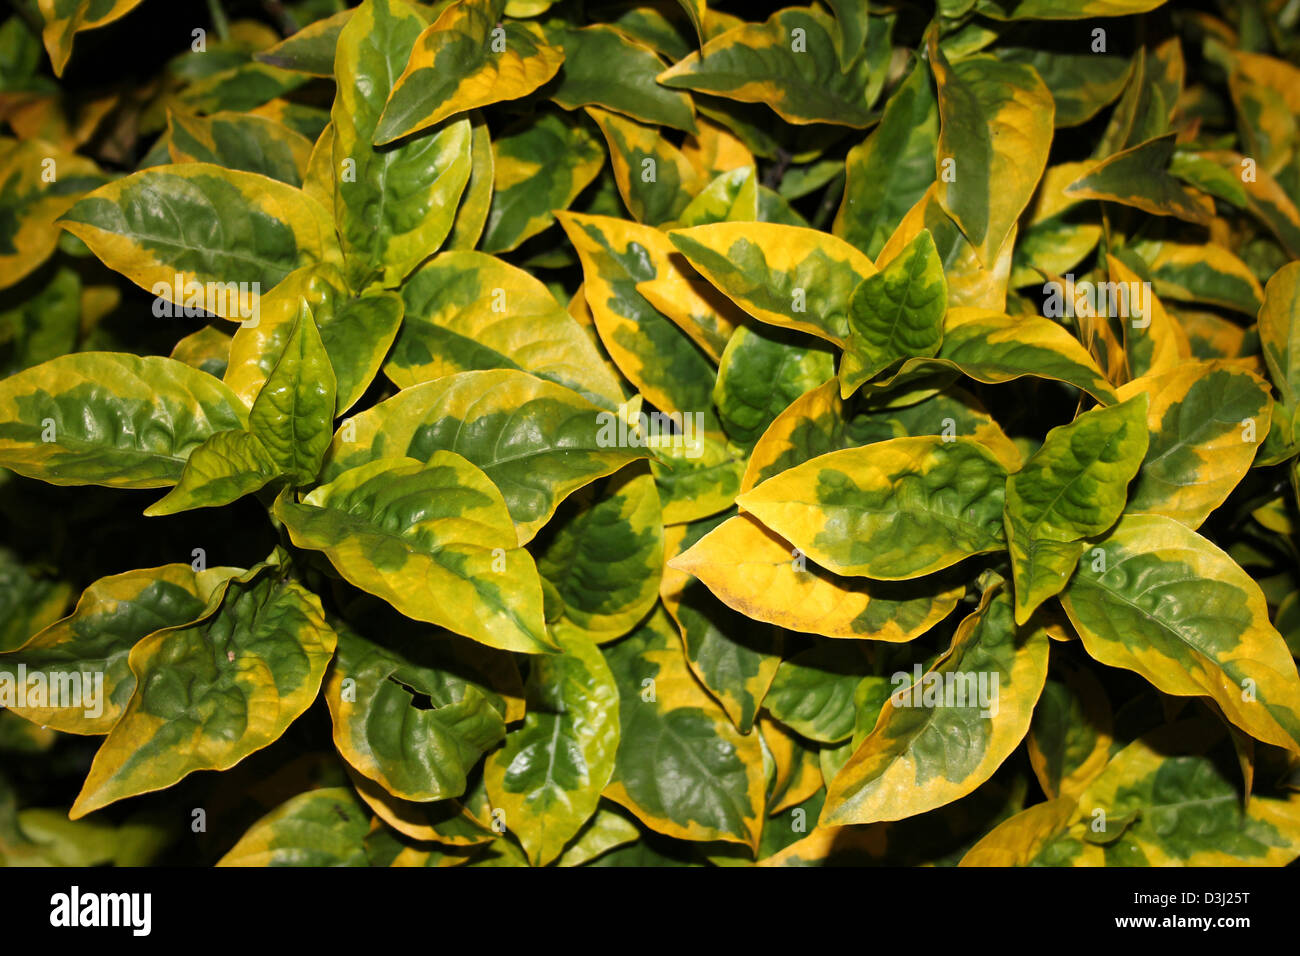 Gelb und grün Blätter von der Strauch immergrüne Euonymus - Euonymus  Japonicus Vielzahl Ovatus Aureus Stockfotografie - Alamy